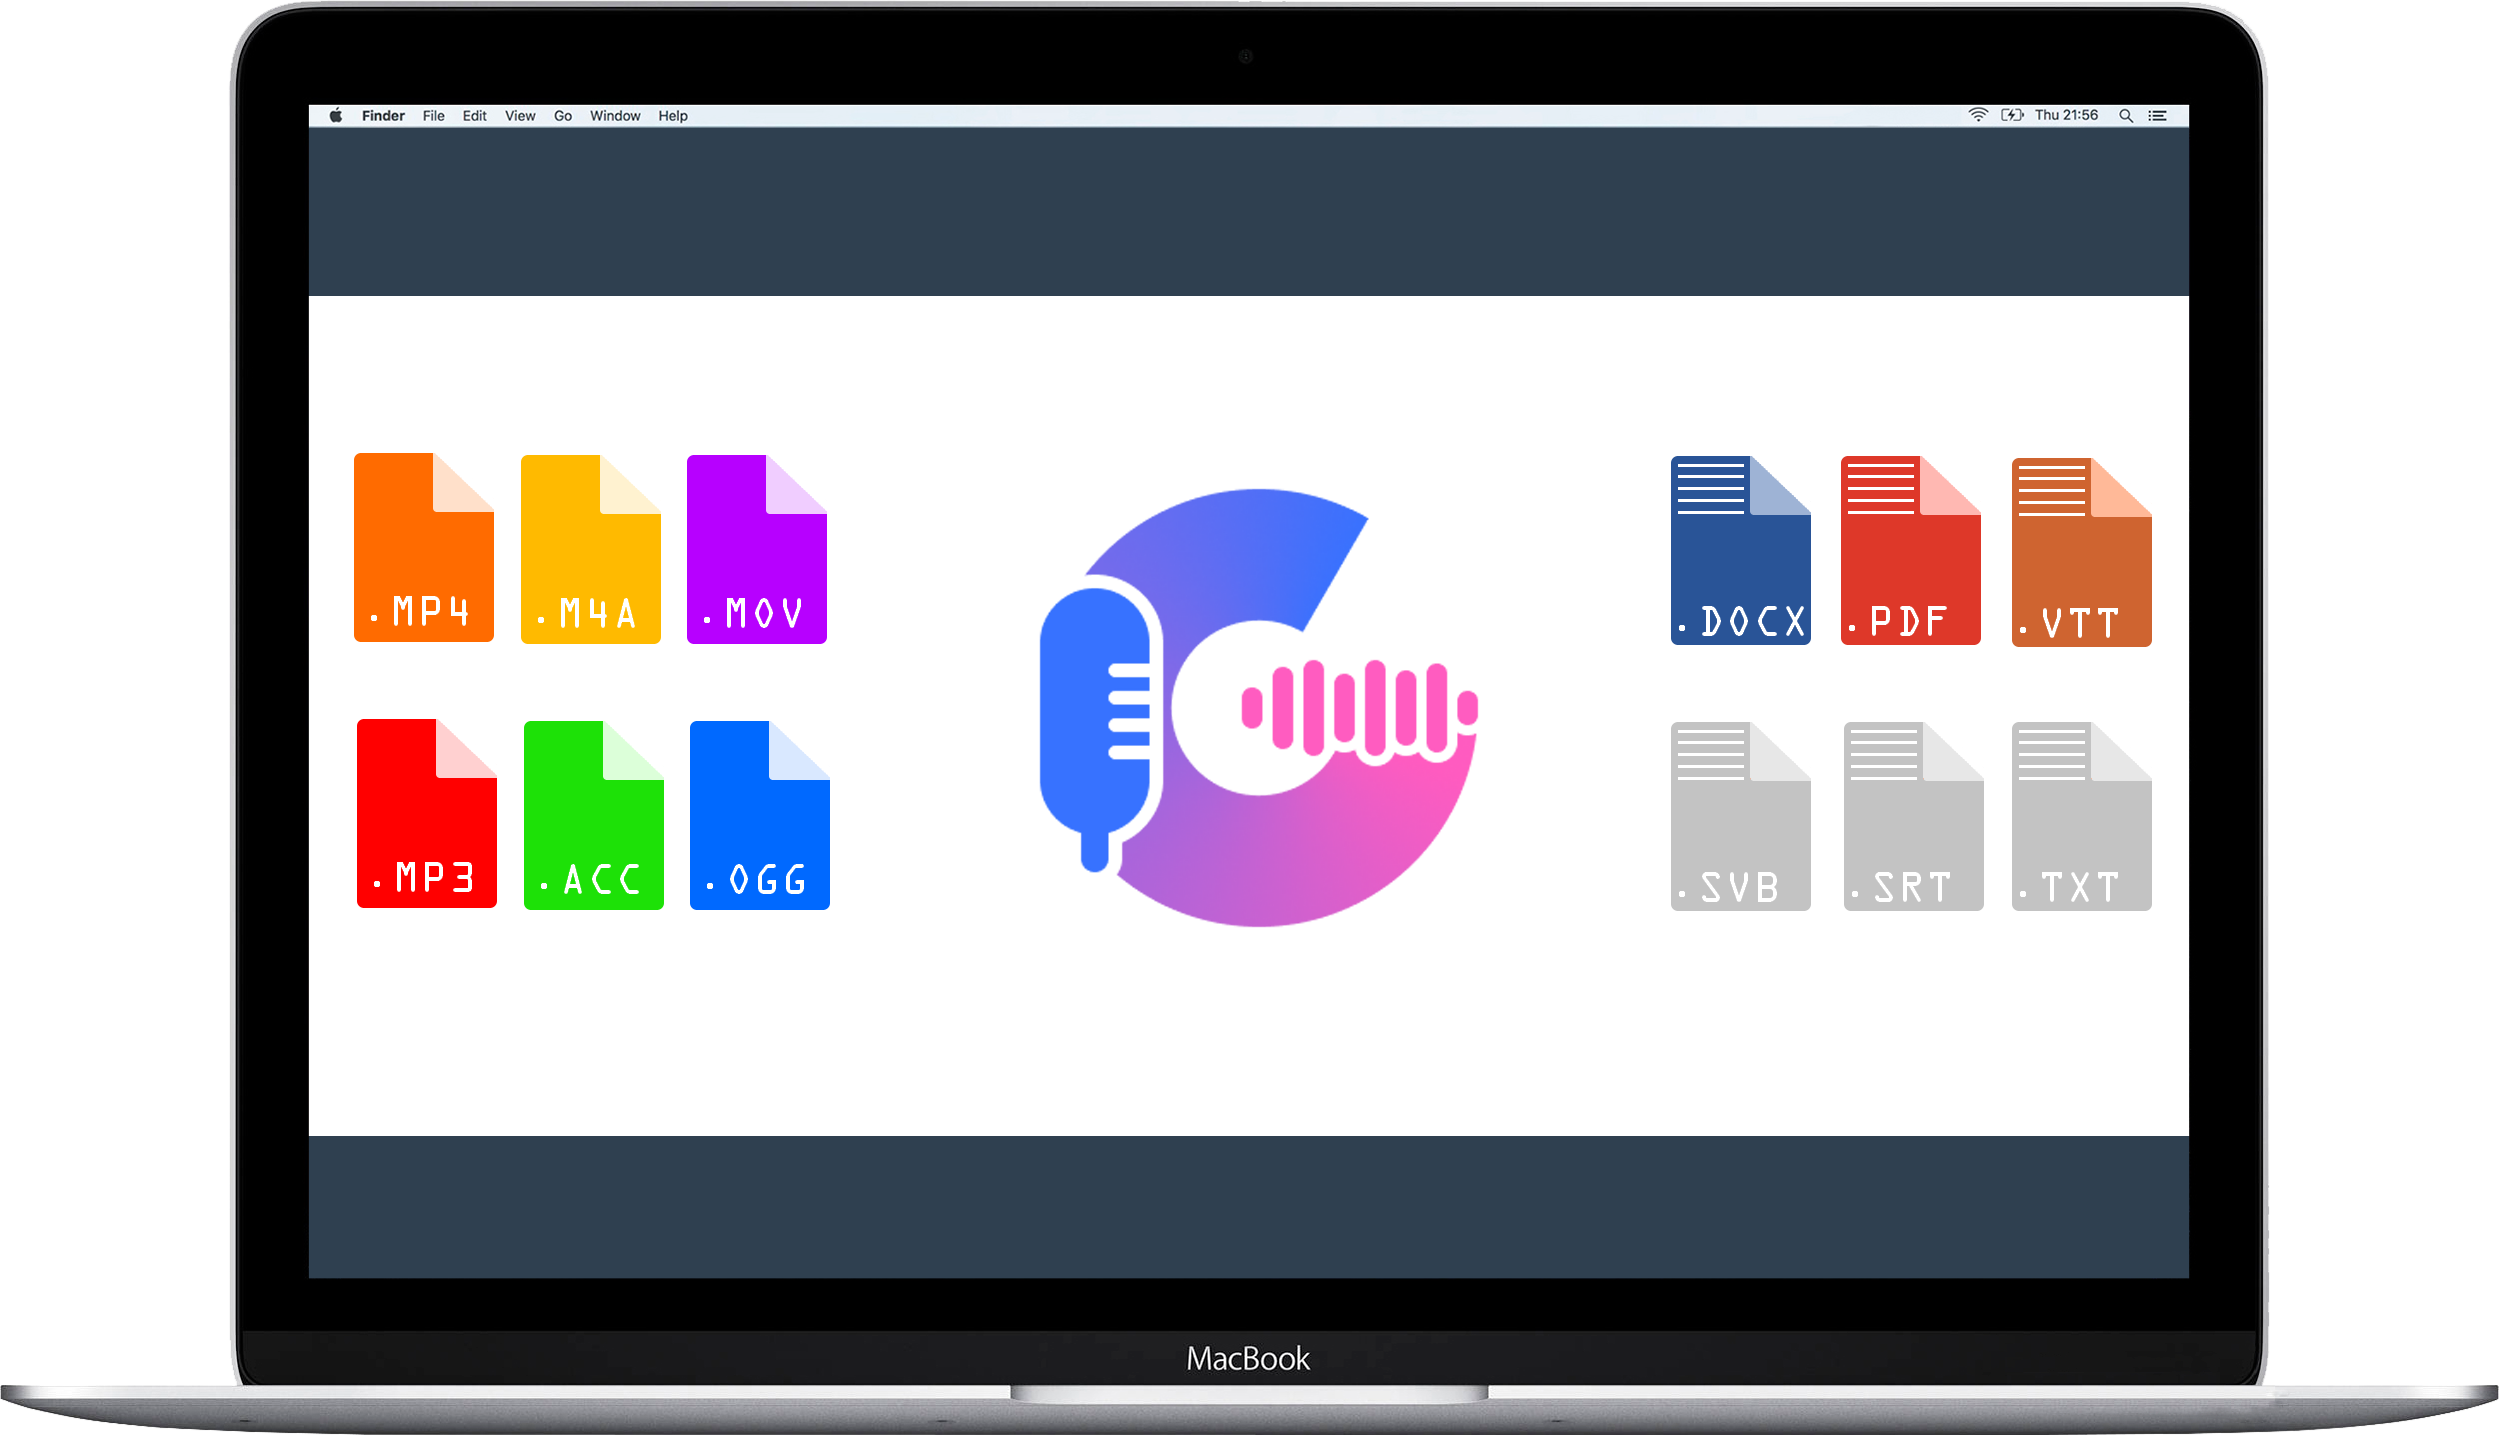 Mac Studio a Studio Display zobrazující řídicí panel přepisovací služby Gglot.